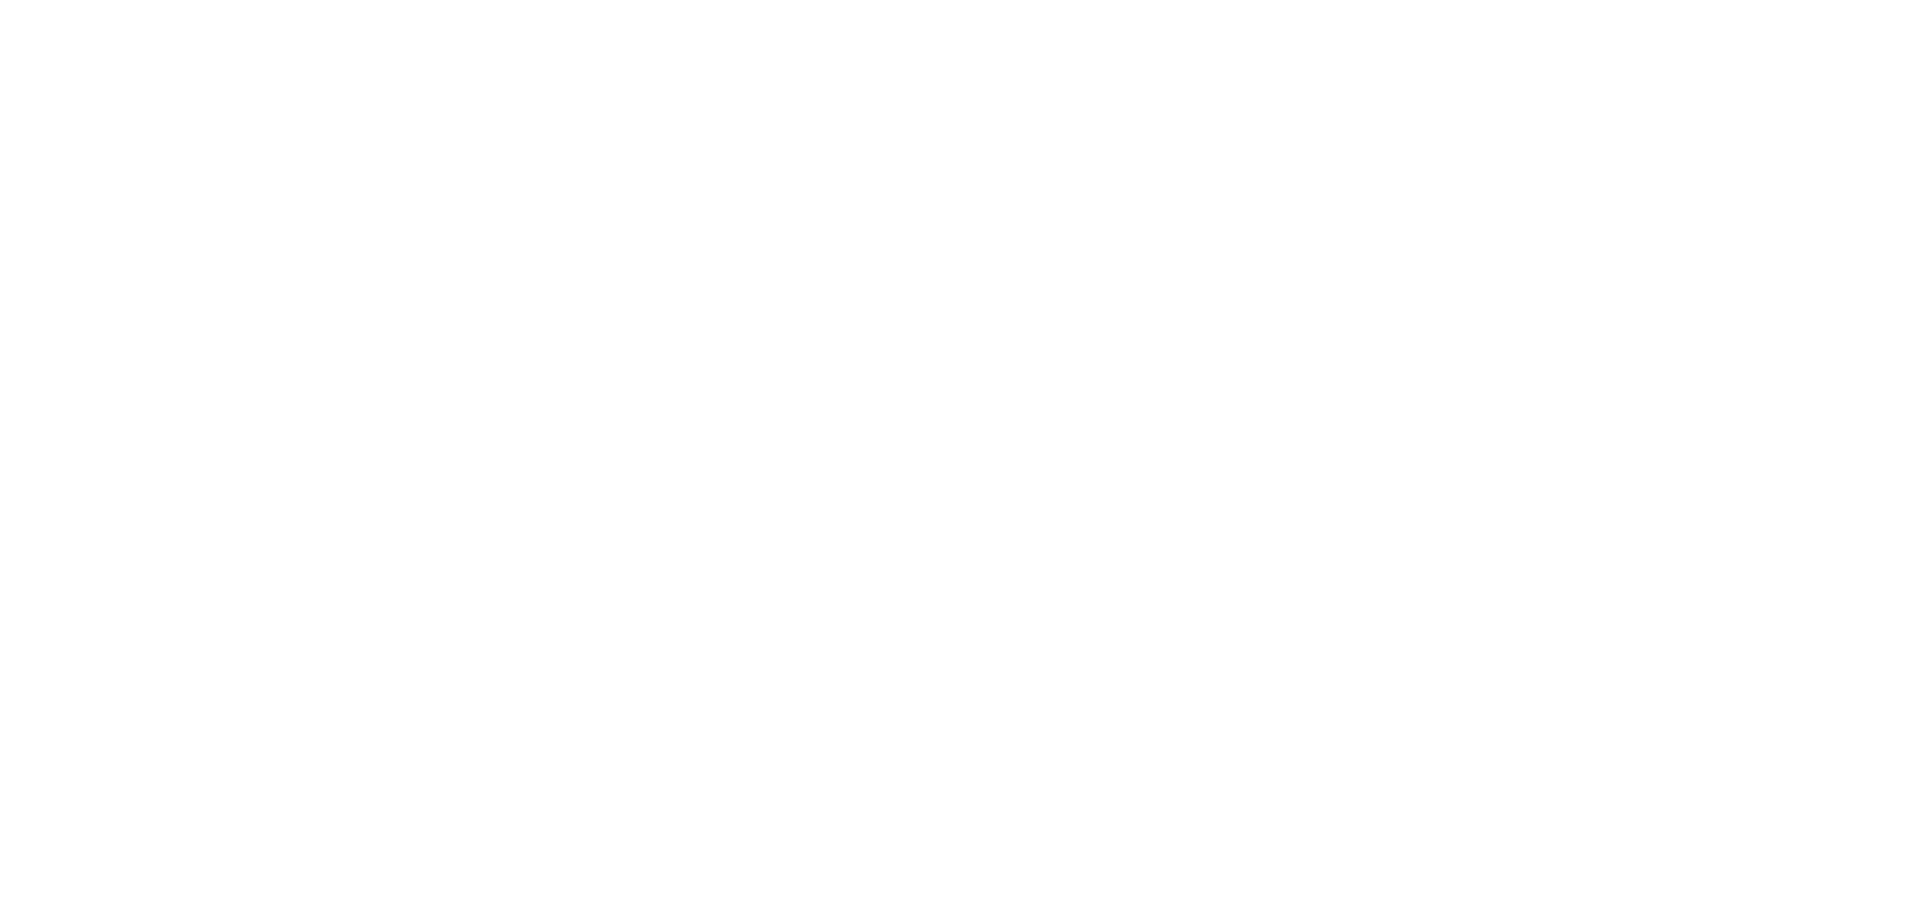 Lee's Landscaping logo